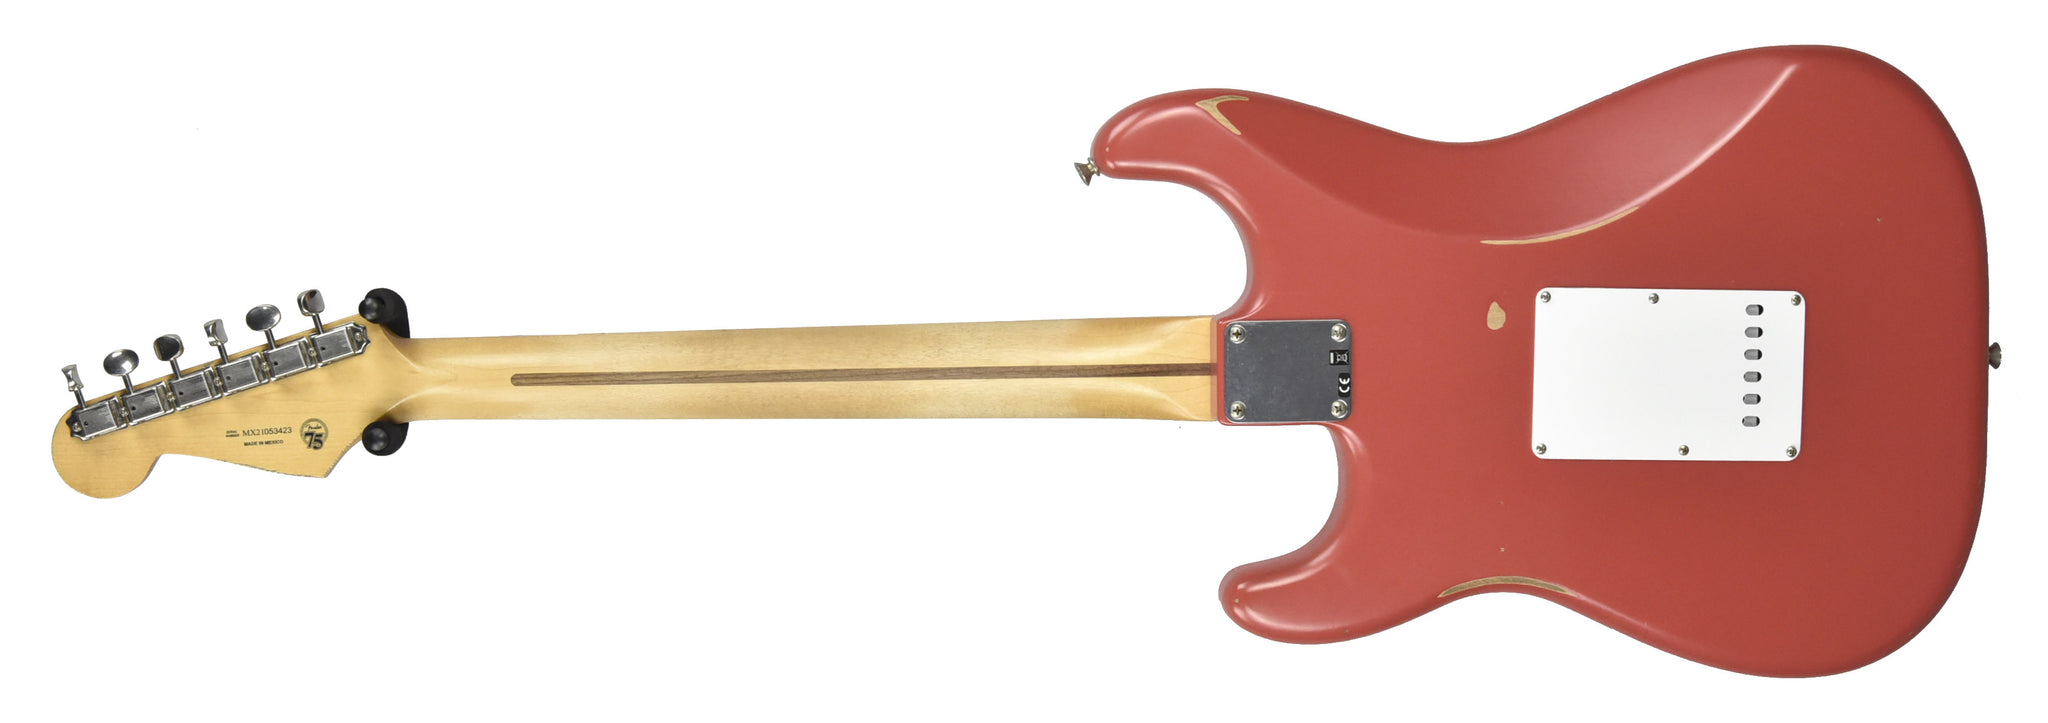 Fender Vintera Fiesta Road MX21053423 Stratocaster Worn Red 50s in